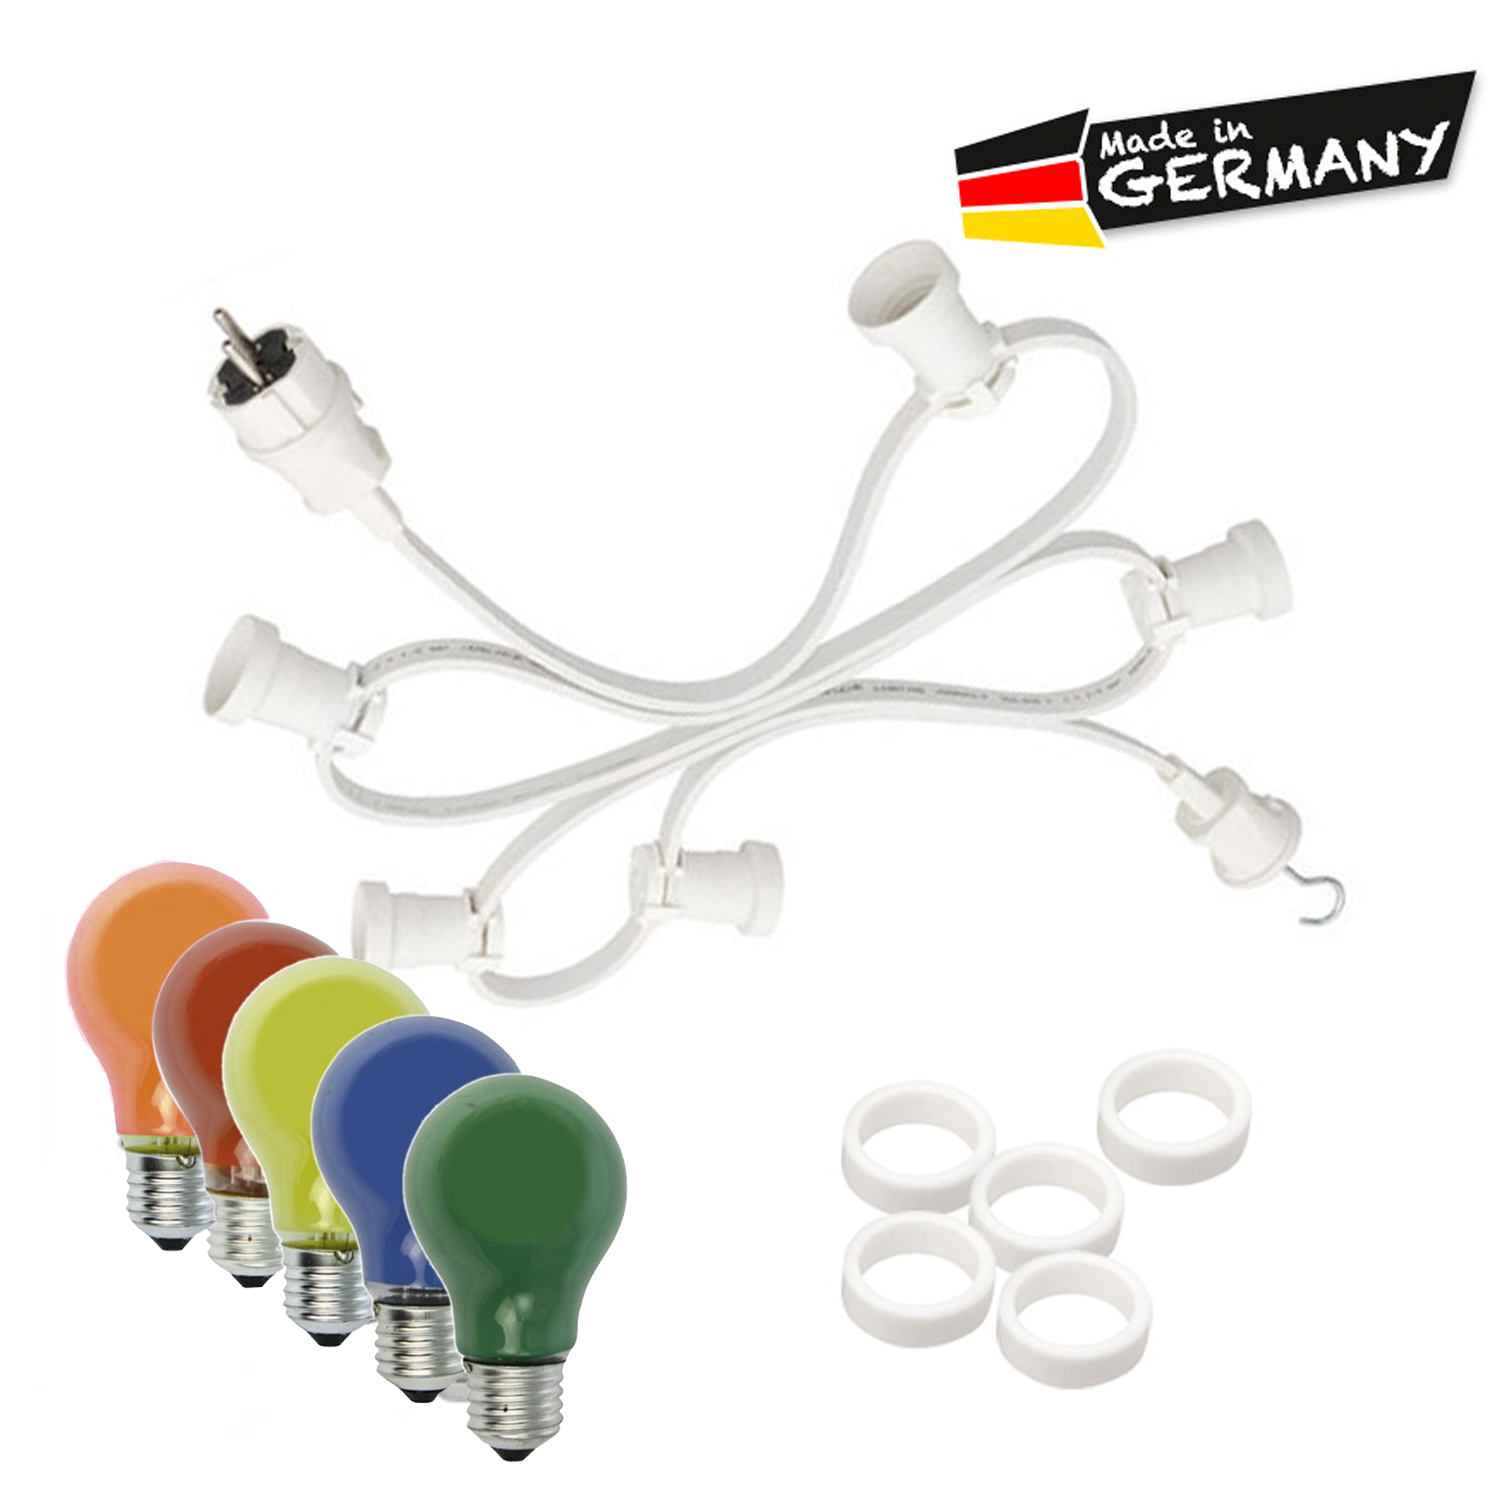 Illu-/Partylichterkette 10m - Außenlichterkette weiß - Made in Germany - 20 x bunte 25W Glühlampen